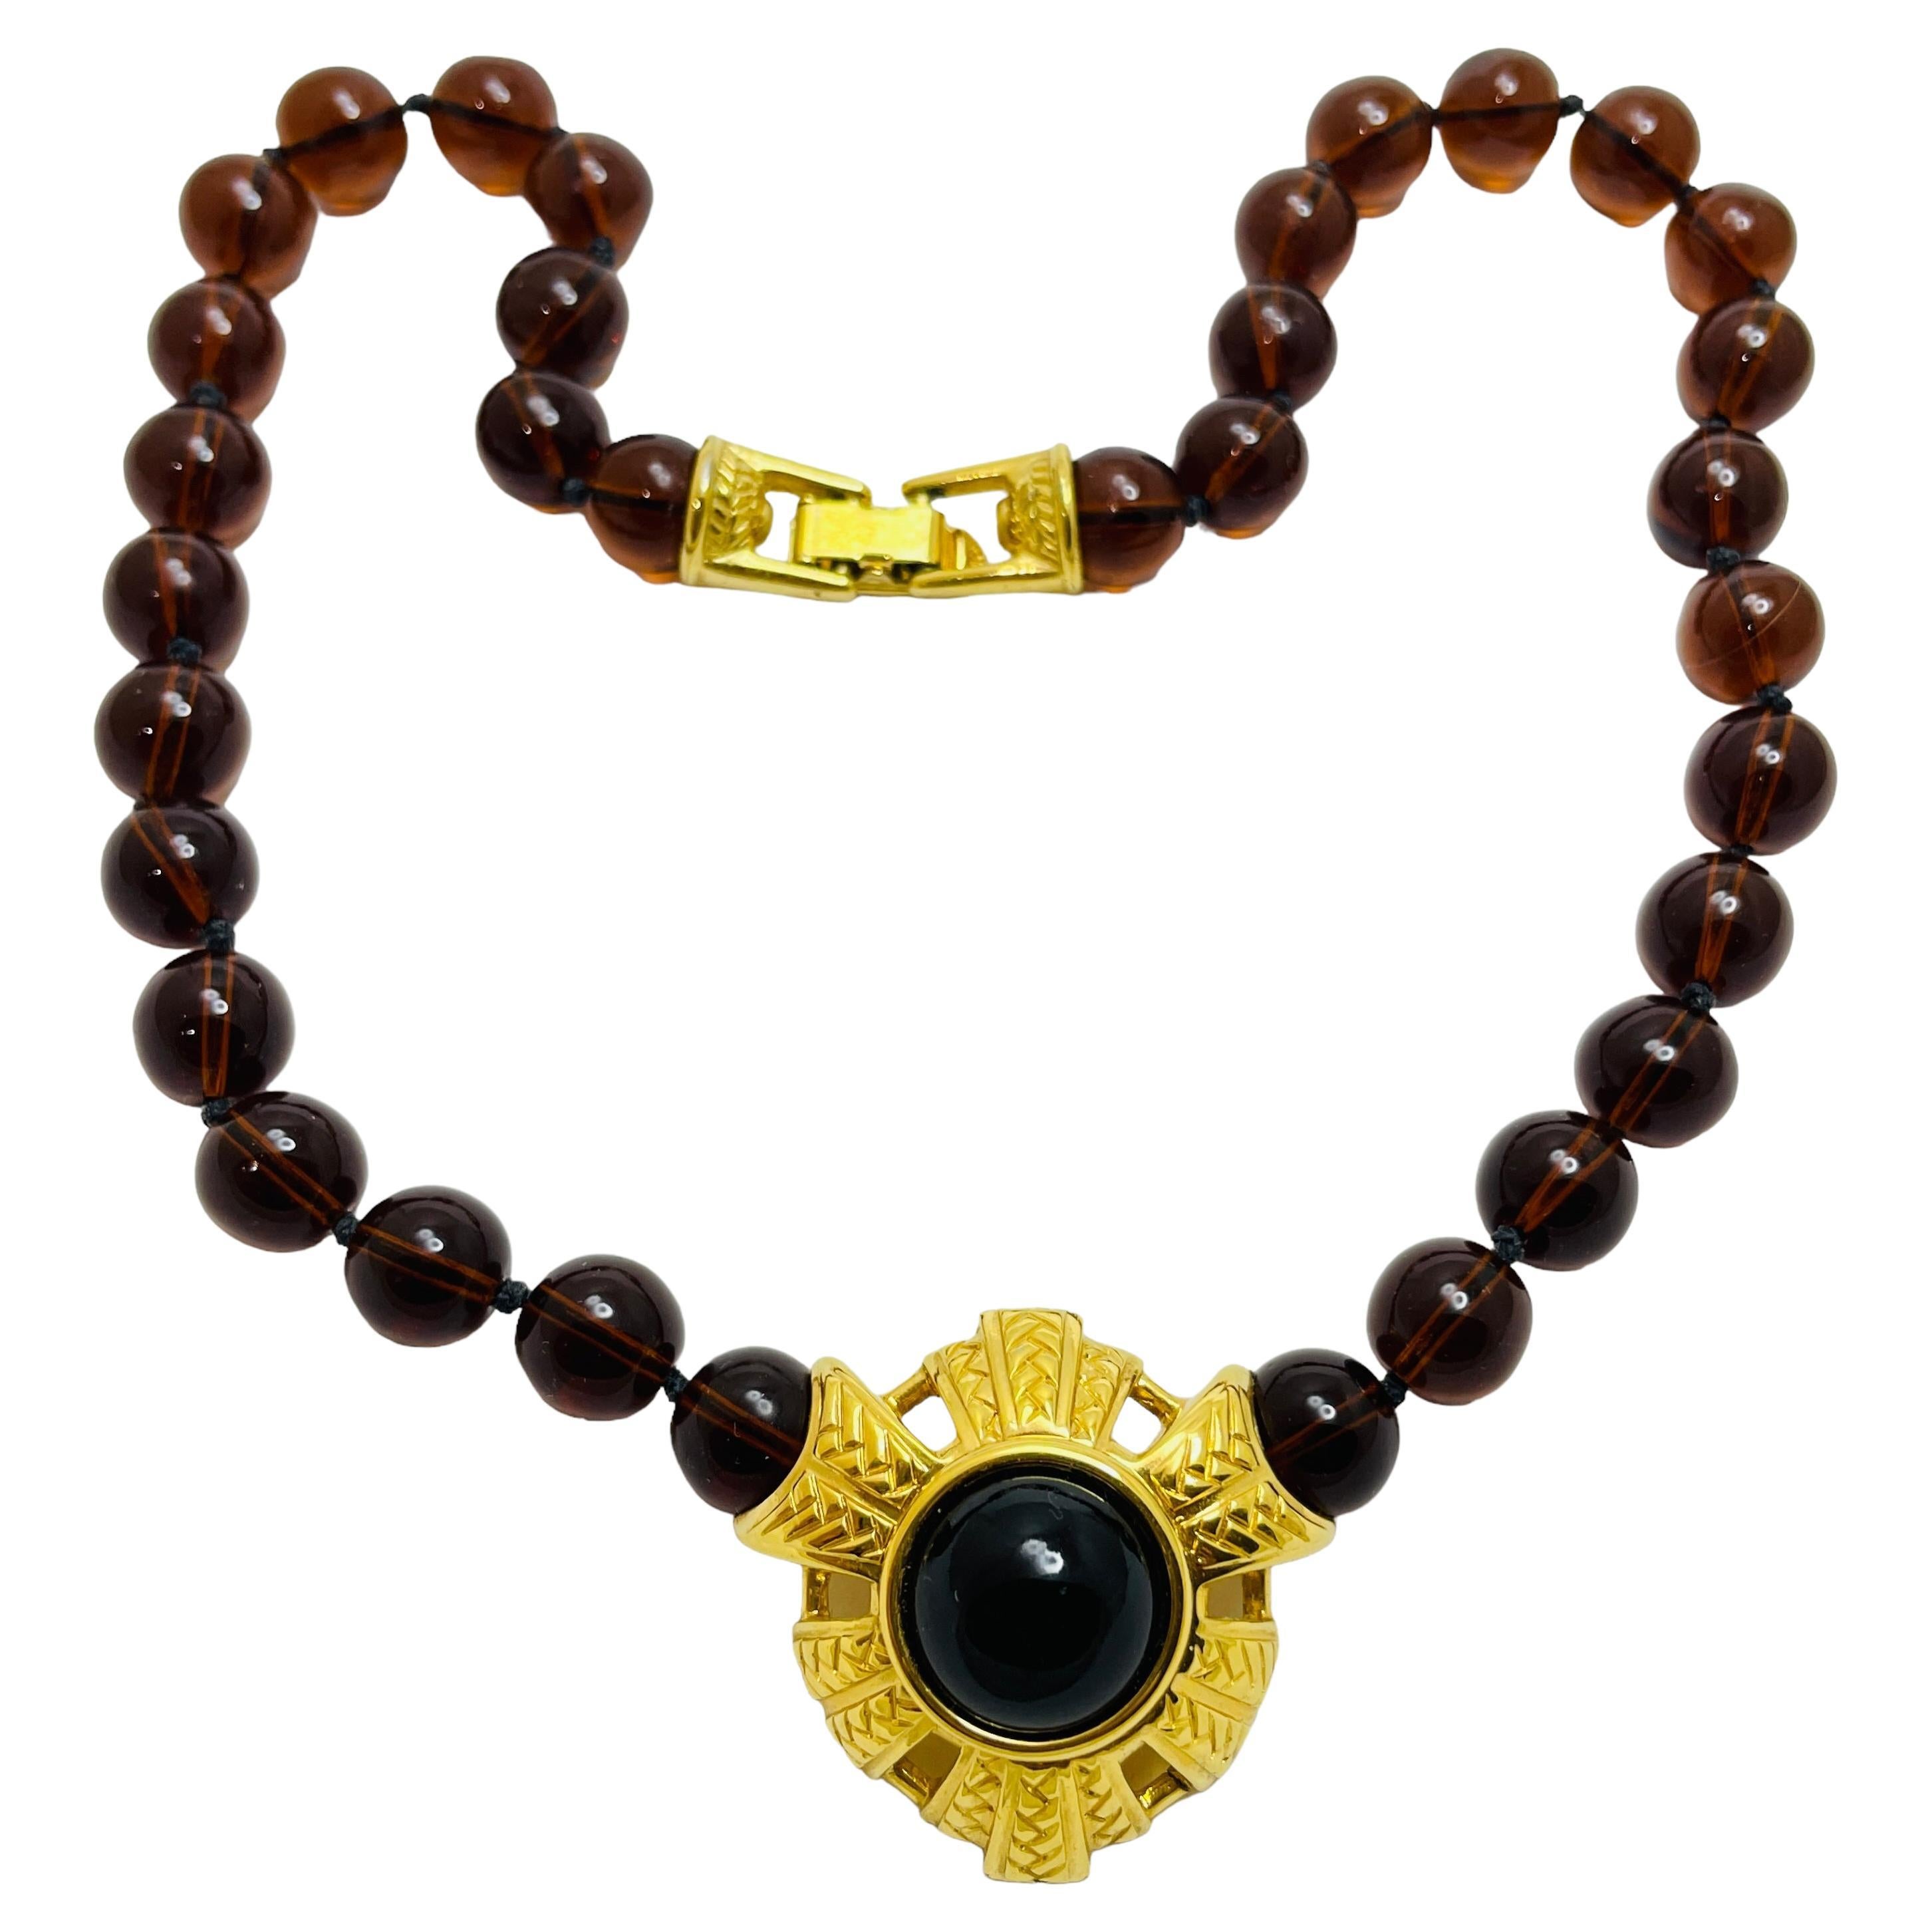  Collana firmata SWAROVSKI con perline in vetro dorato in stile etrusco